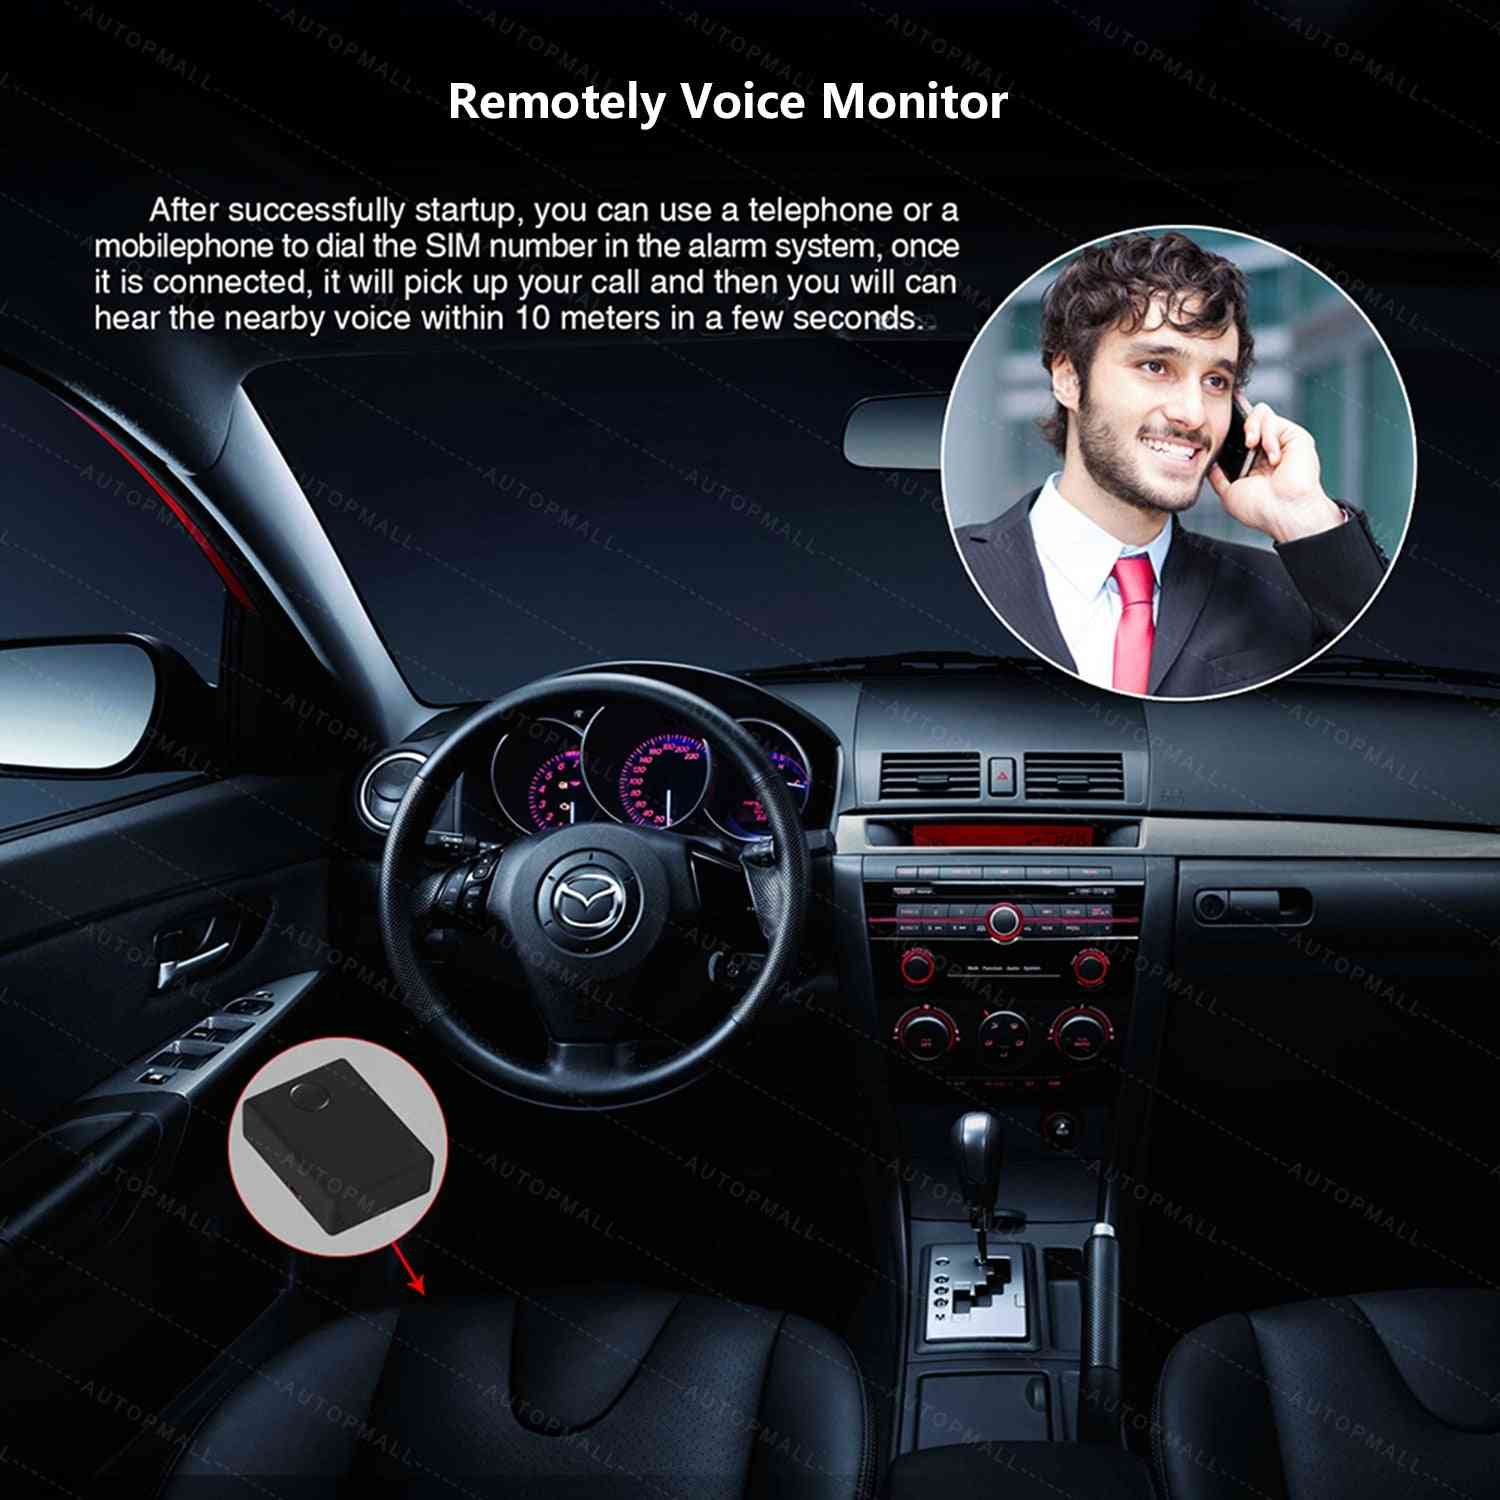 Dohled nad hlasovým monitorem zvuku, detekce sim karty, automatická odpověď a vytáčení, osobní hlasová aktivace zařízení